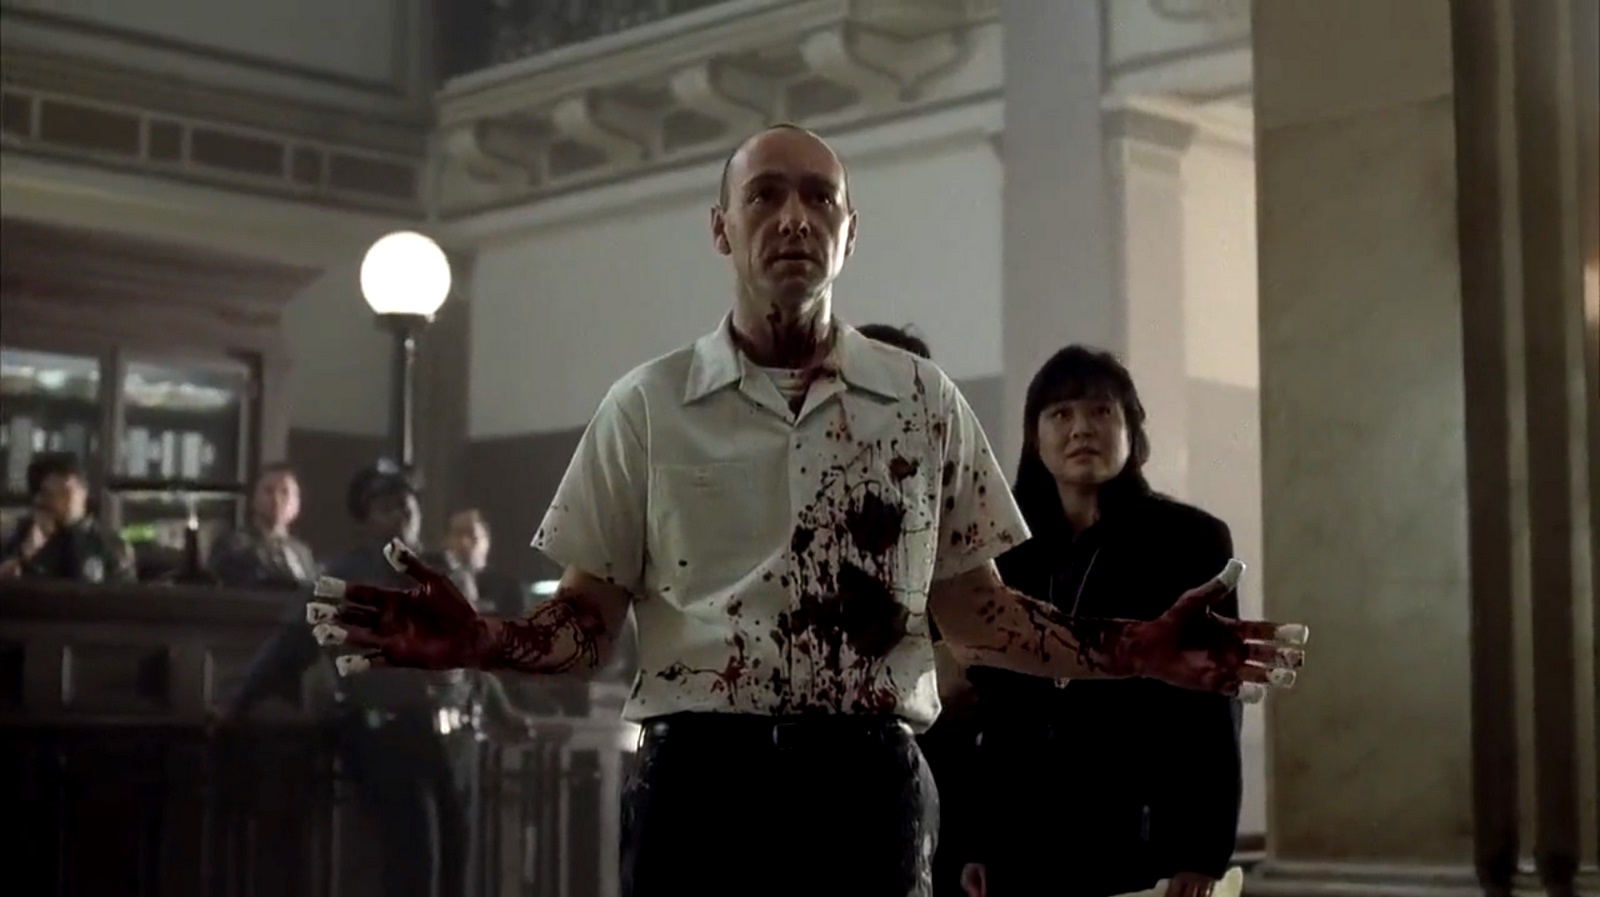 Kevin Spacey as the serial killer known simply as John Doe in Se7en (1995)